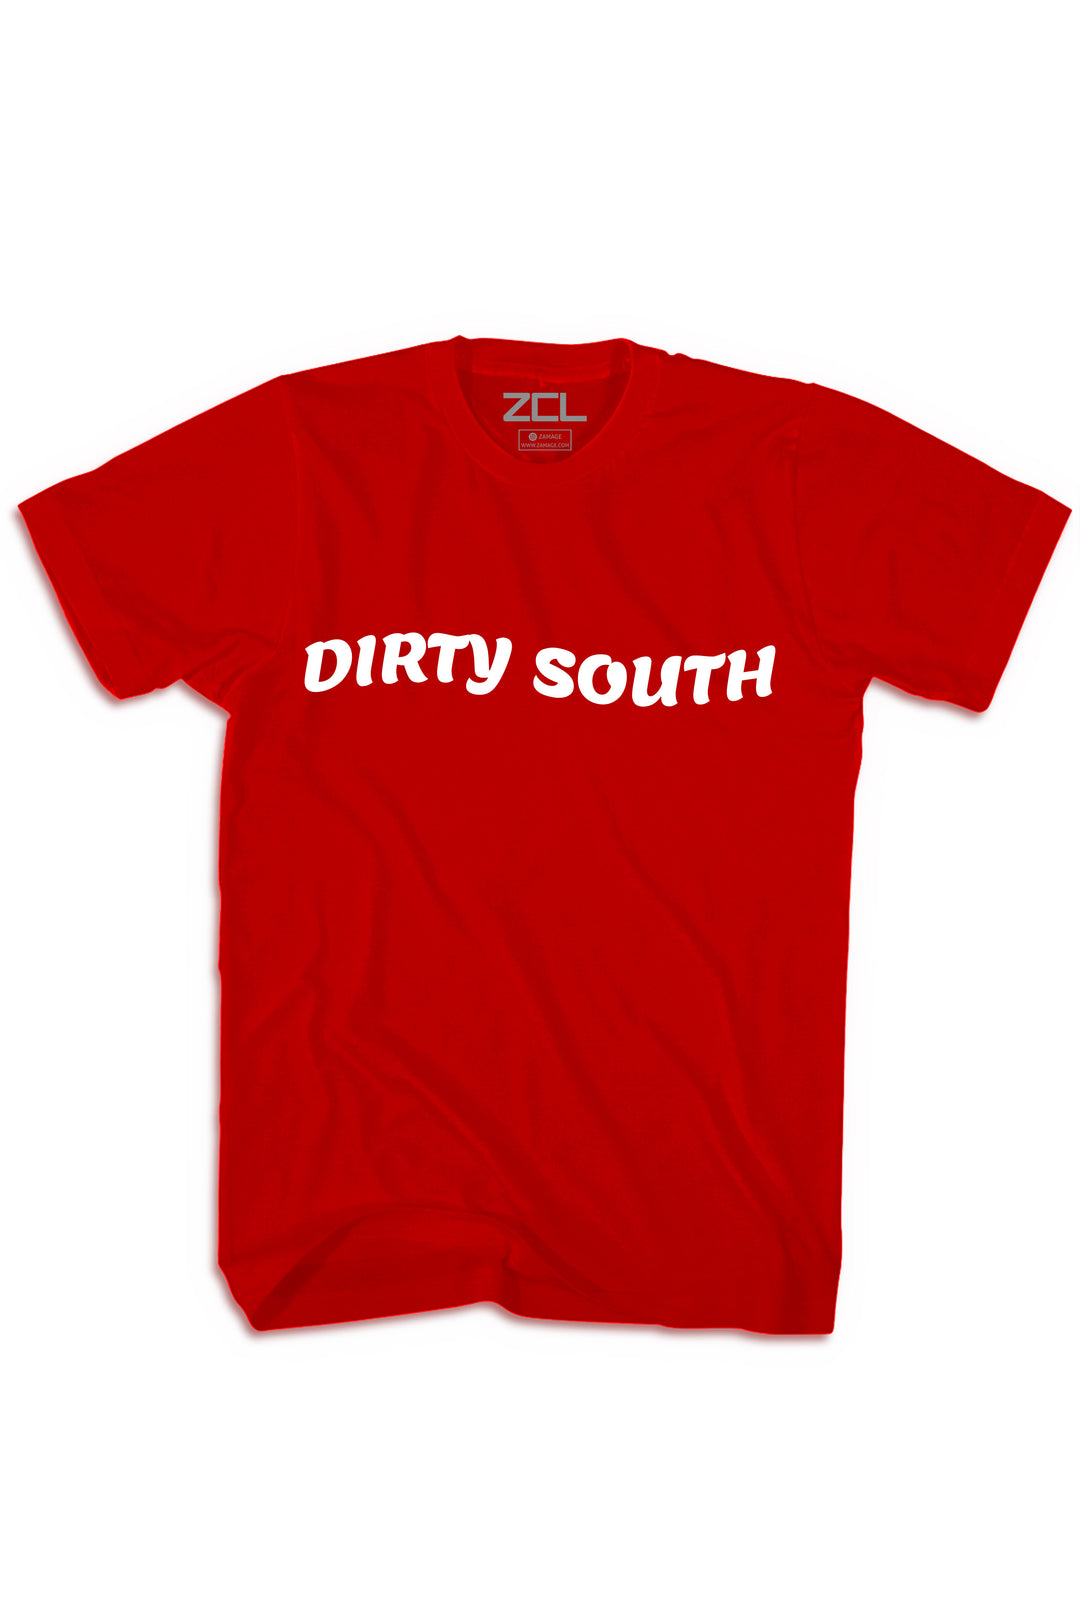 Dirty South Tee (White Logo) - Zamage